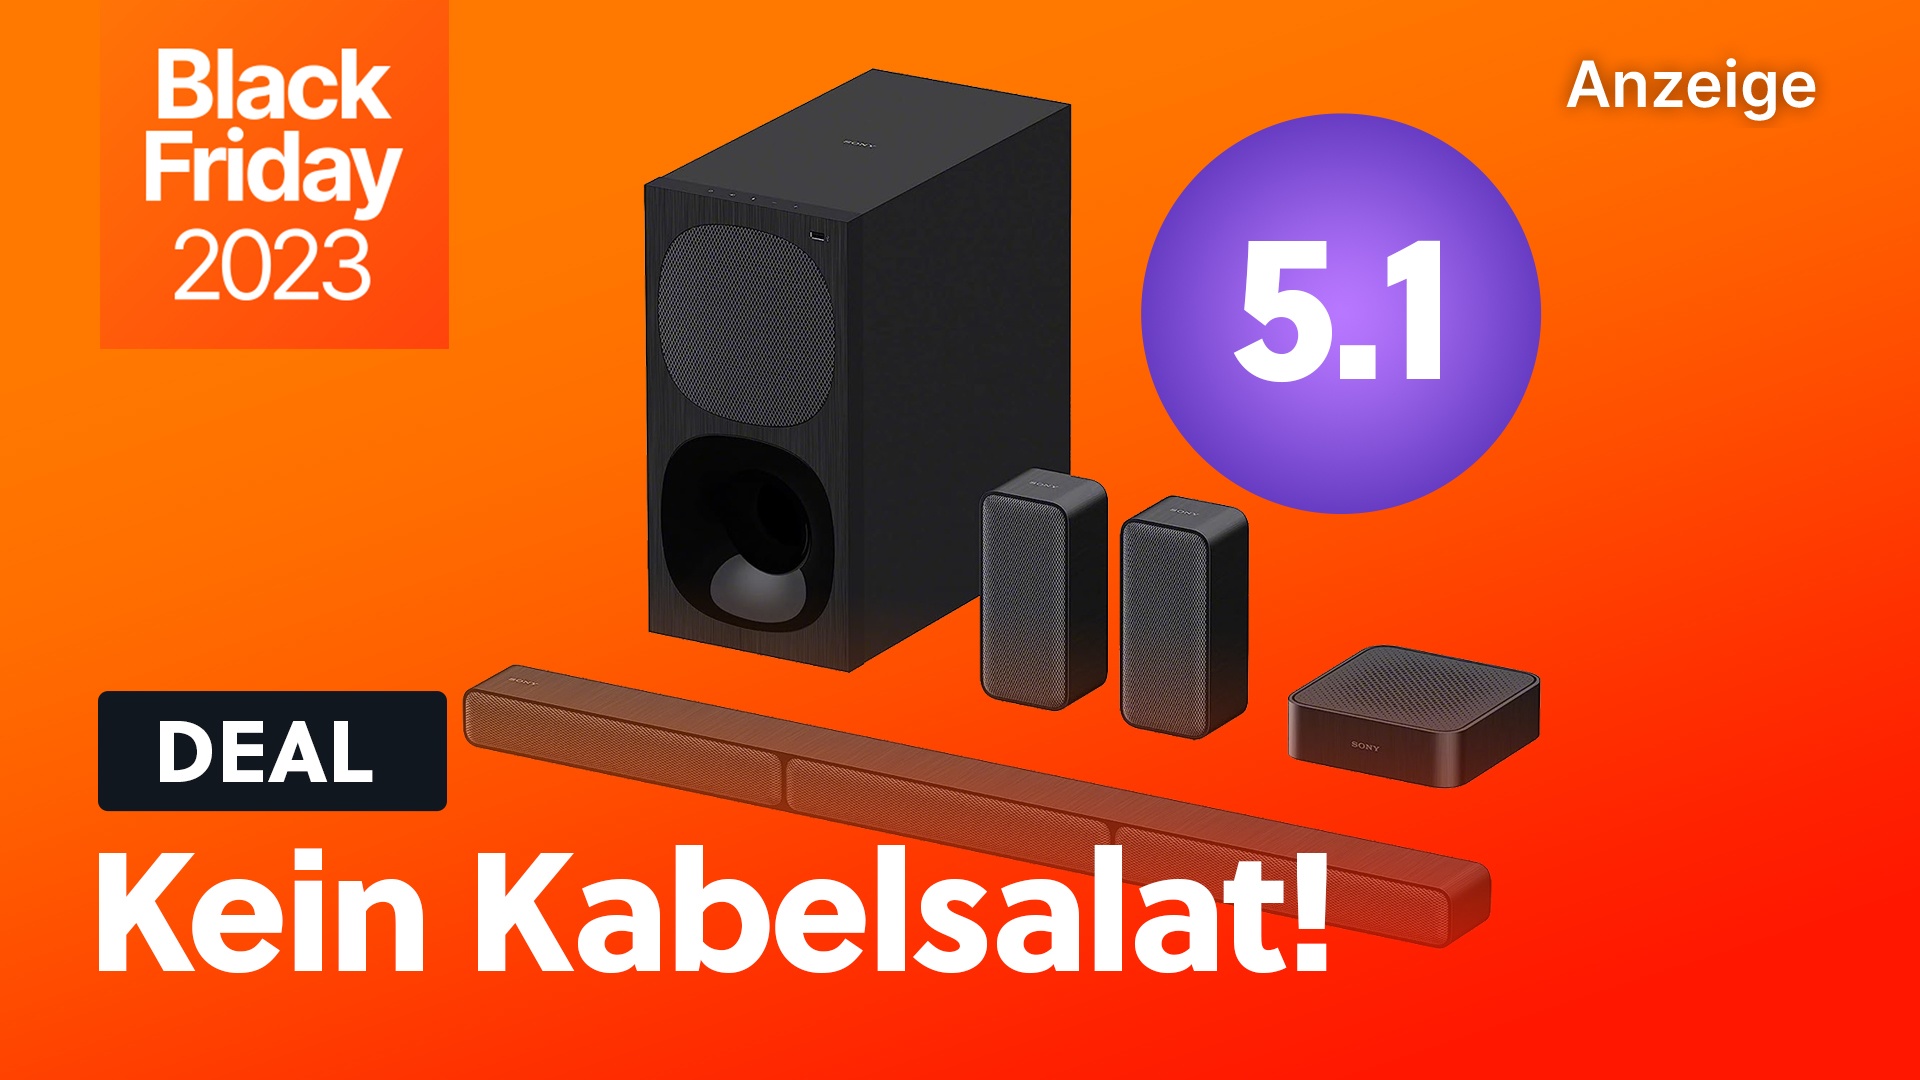 Kabelloses 5.1 Soundsystem mit Sounbar und Subwoofer von Sony für kurze Zeit zum Hammerpreis!